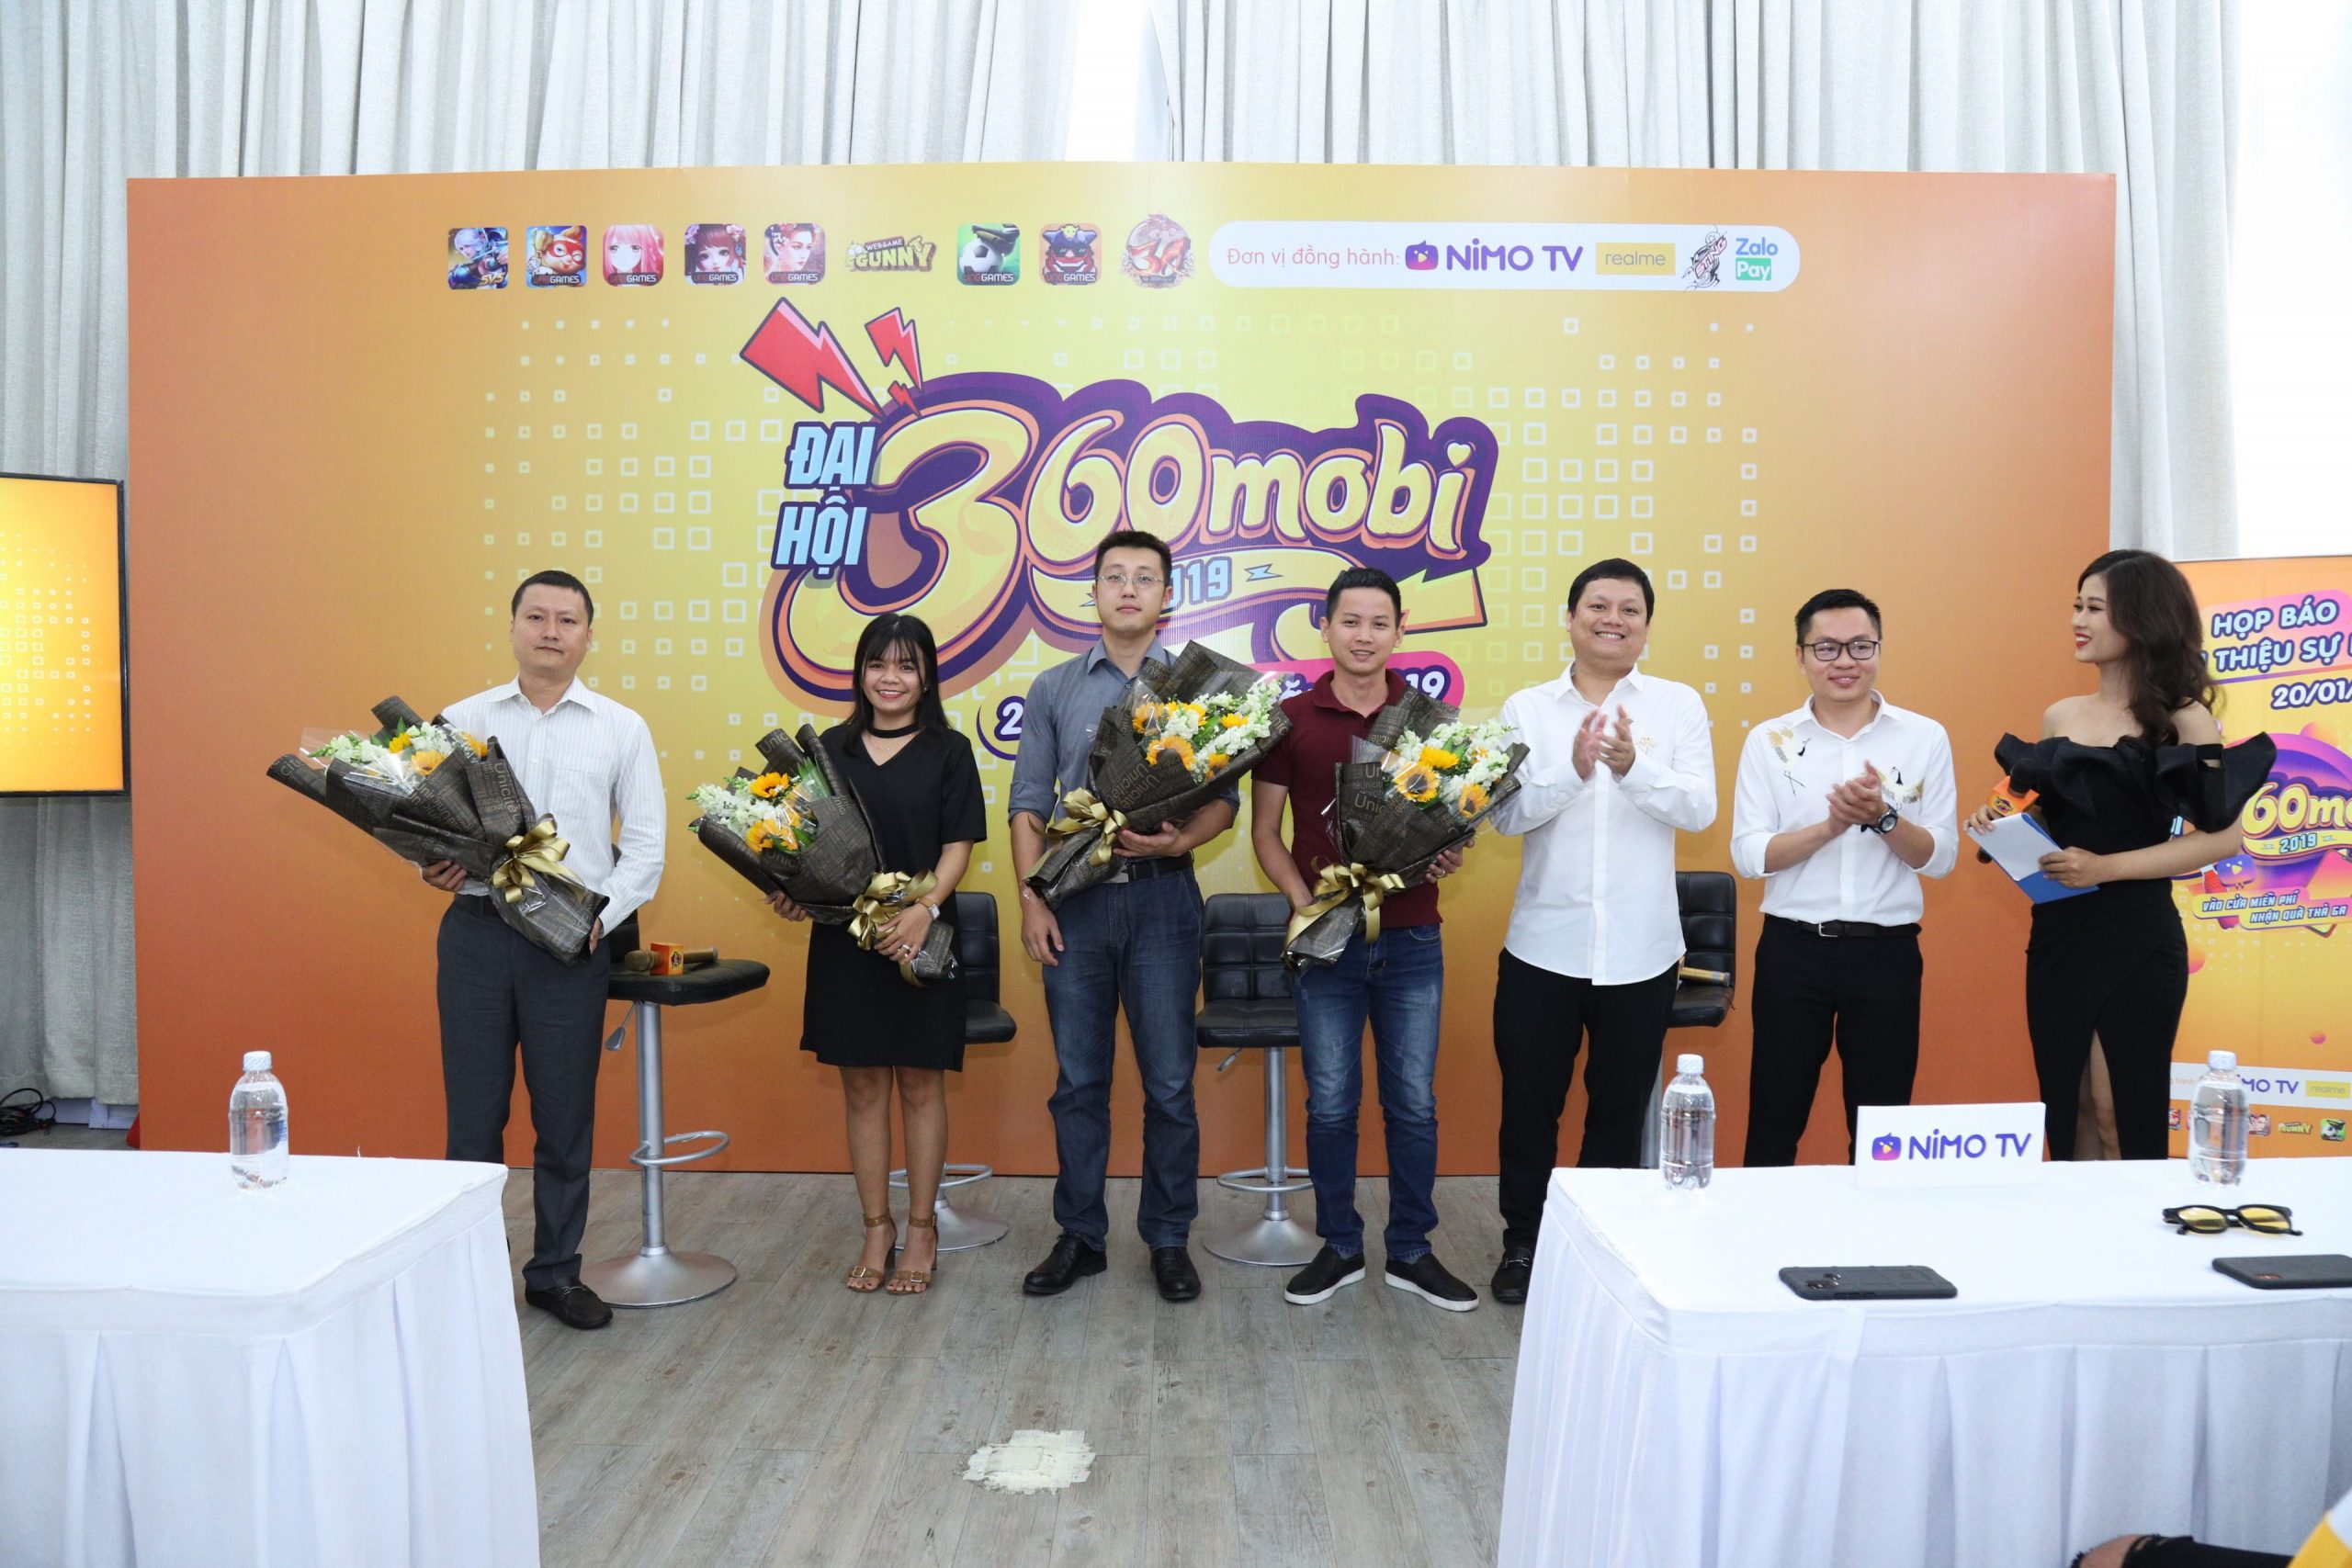 Realme đồng hành cùng giải đấu Mobile Legends: Bang Bang VNG và Đại hội 360mobi